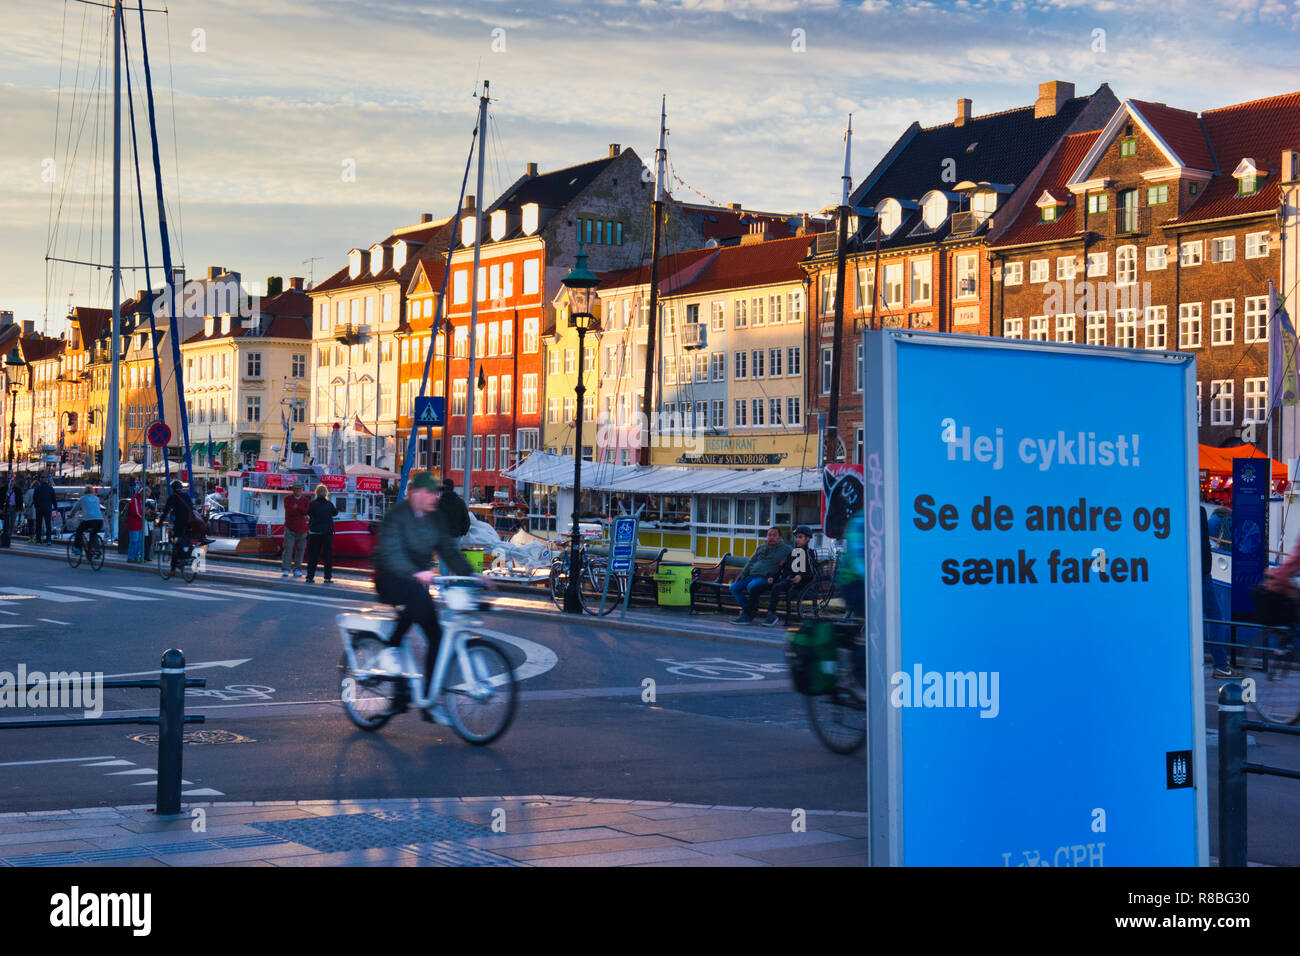 Radfahrer und Zeichen Warnung Vorsicht vor Anderen und Verlangsamen, Nyhavn, Kopenhagen, Dänemark, Skandinavien Stockfoto